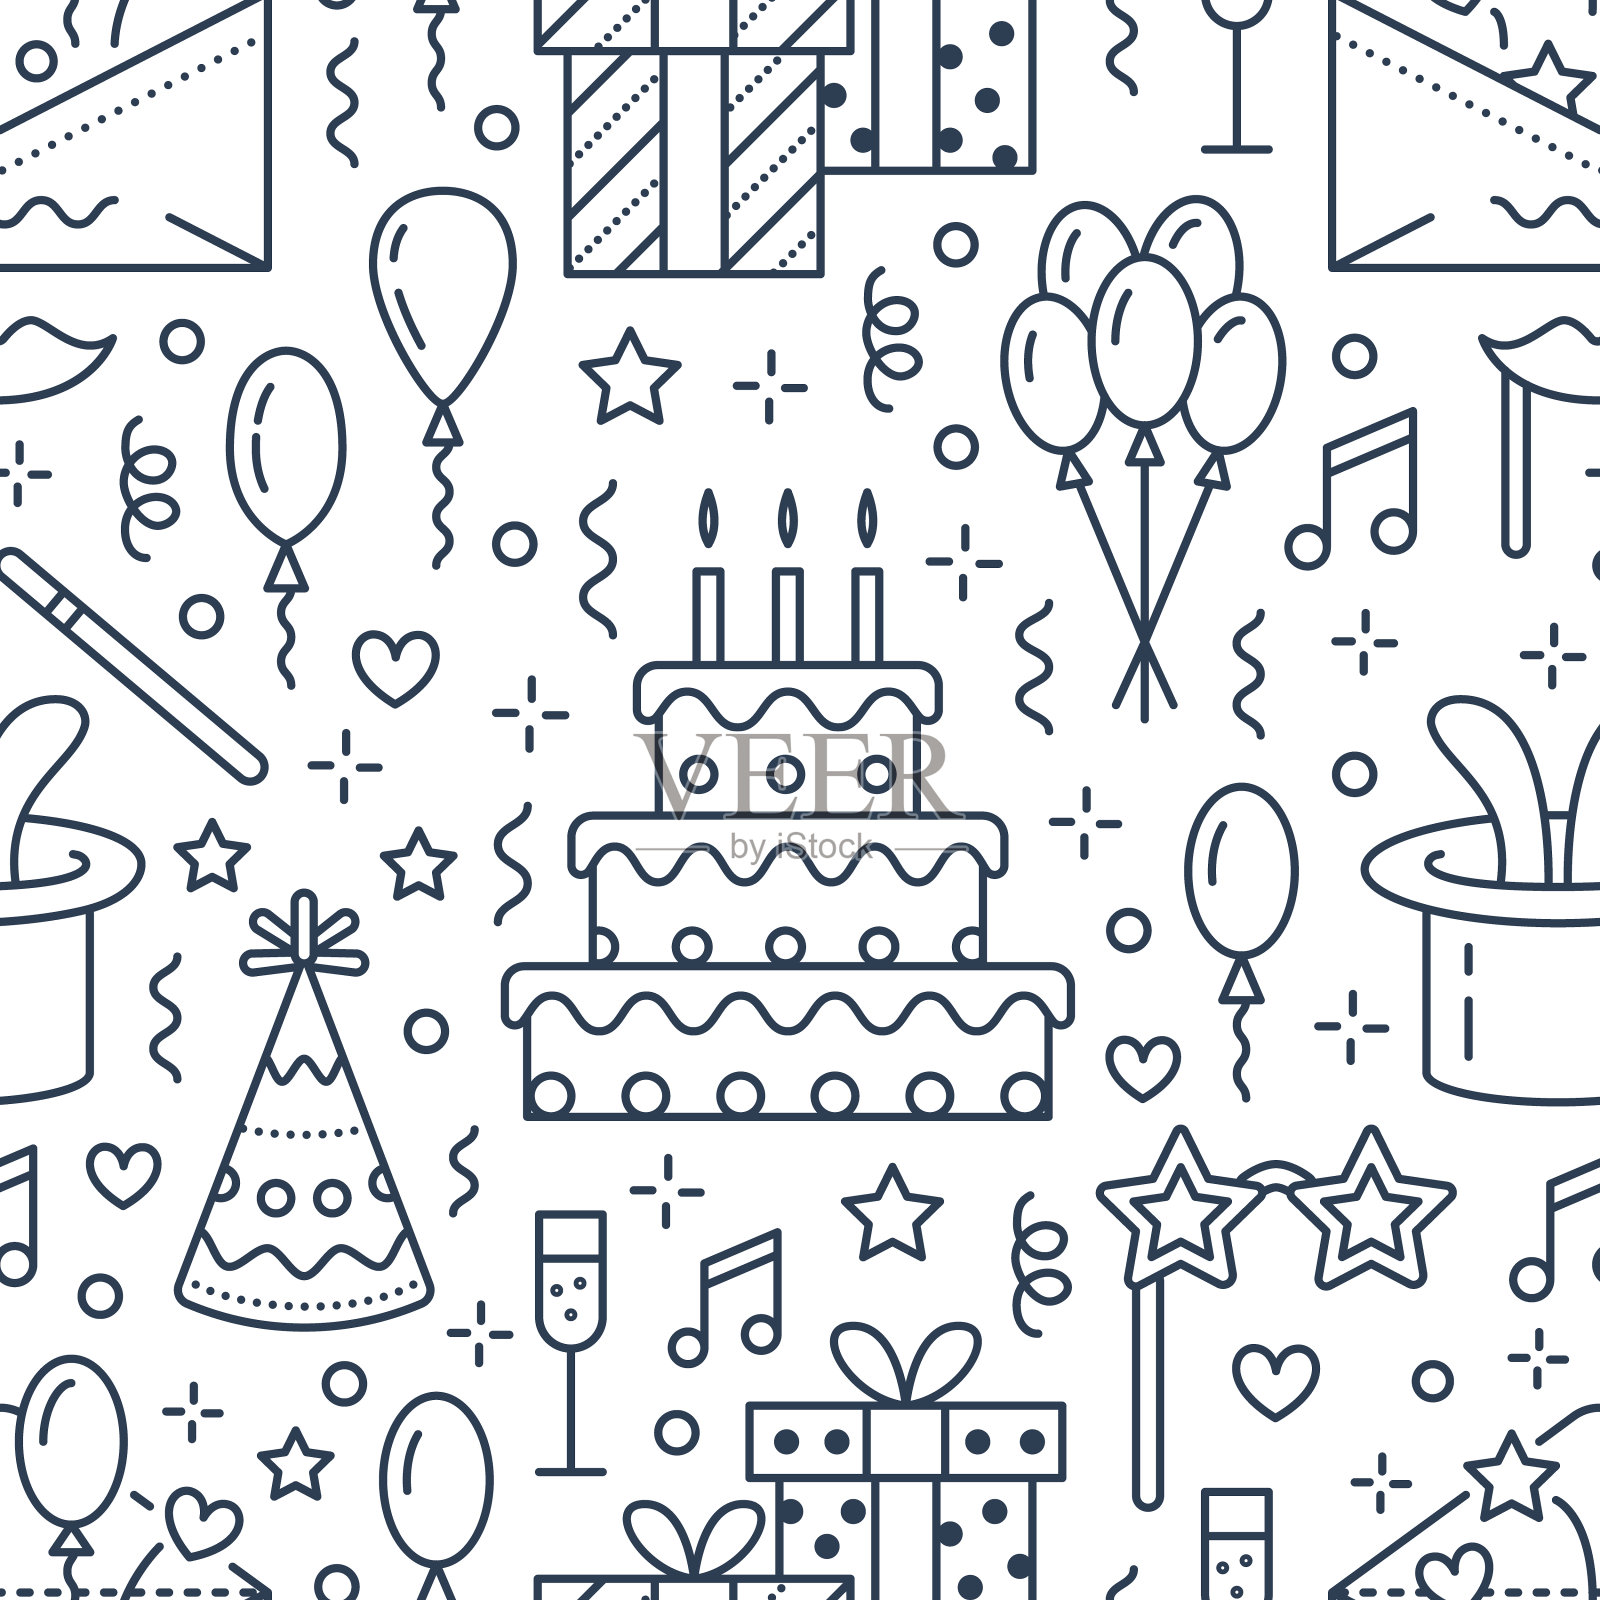 生日派对无缝图案，平线插图。矢量图标的事件代理，婚礼组织-蛋糕，气球，礼物，邀请，儿童娱乐。可爱的重复背景插画图片素材